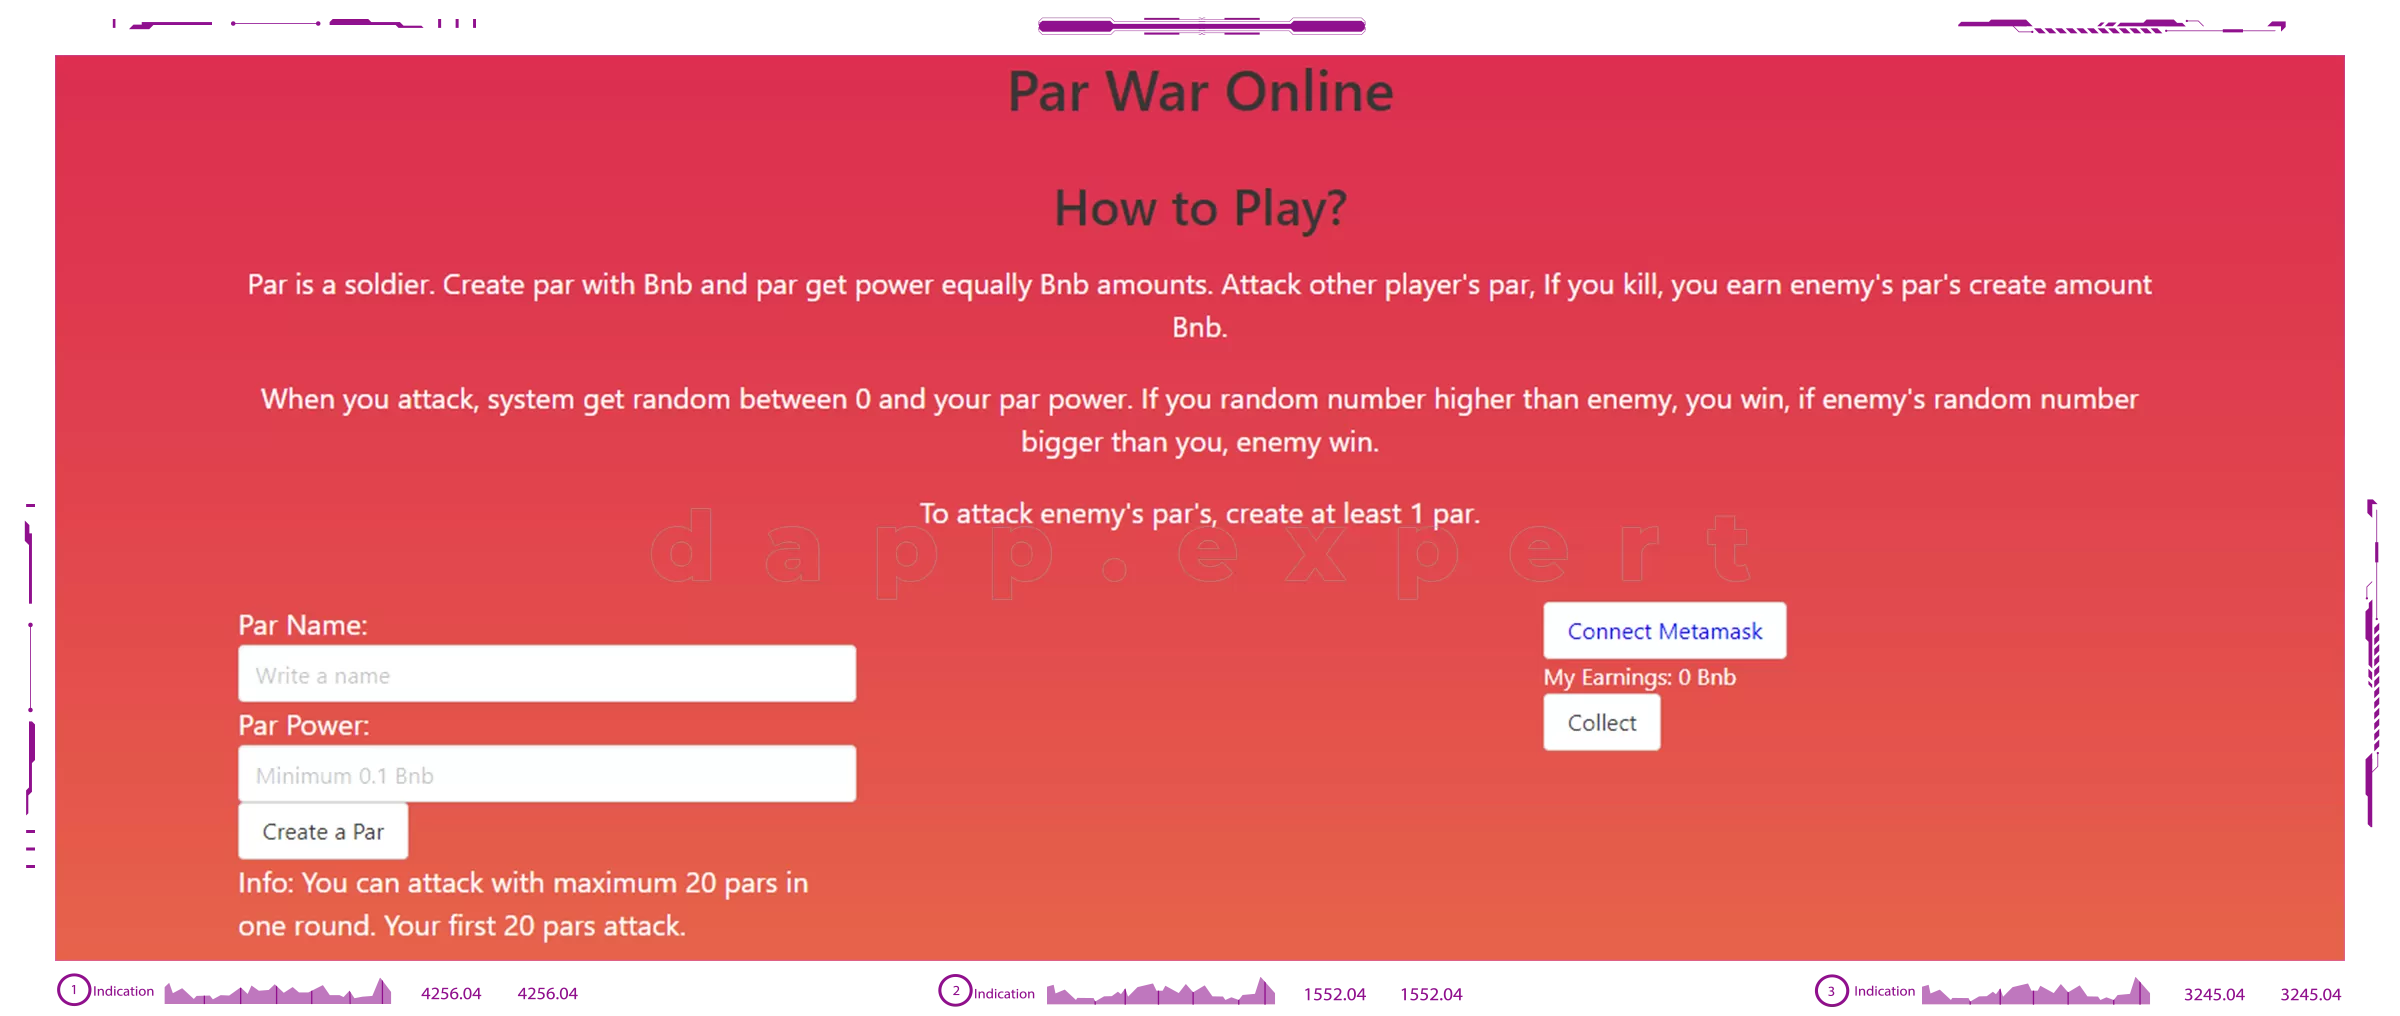 Dapp Par War Online